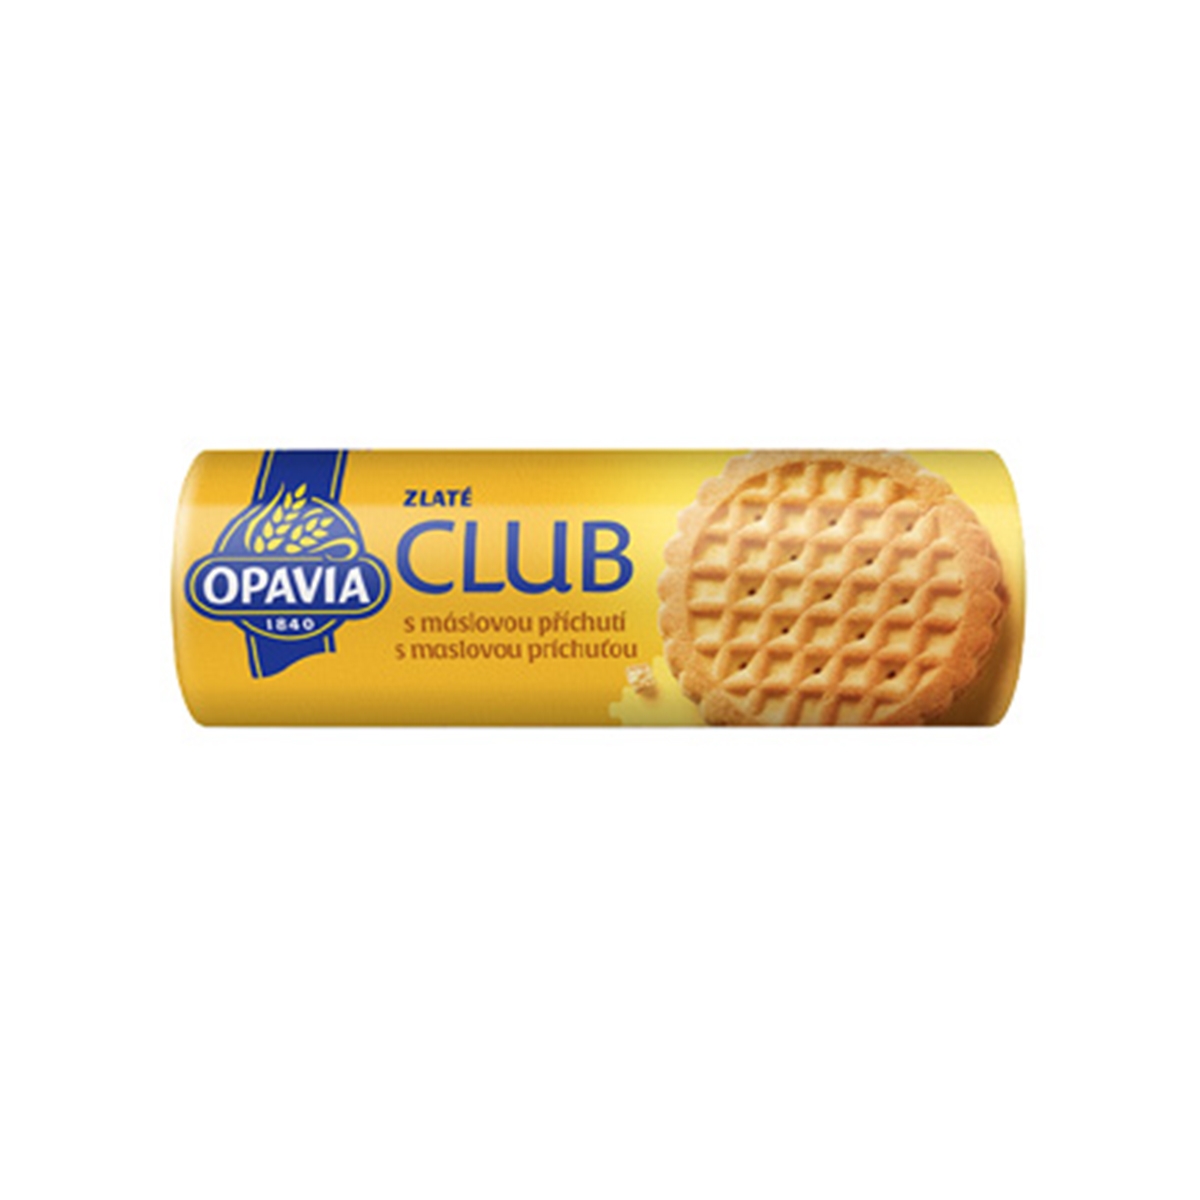 Zlaté Club máslové 140 g